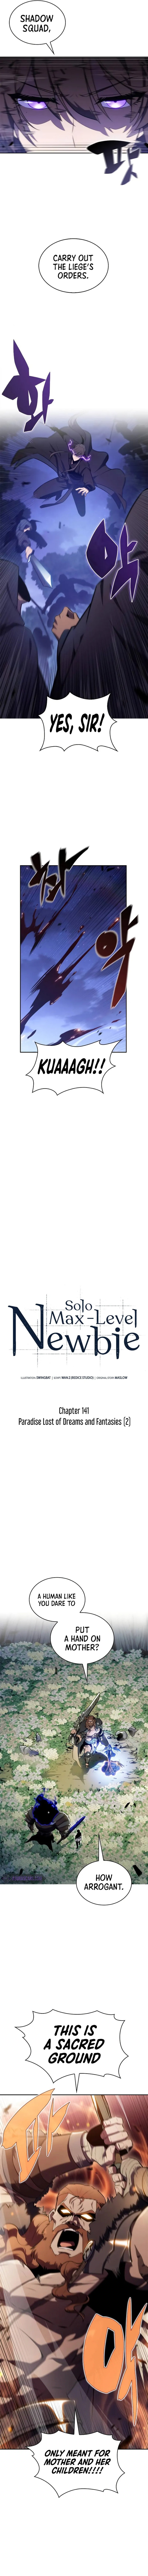 Solo Max Level Newbie 141 2